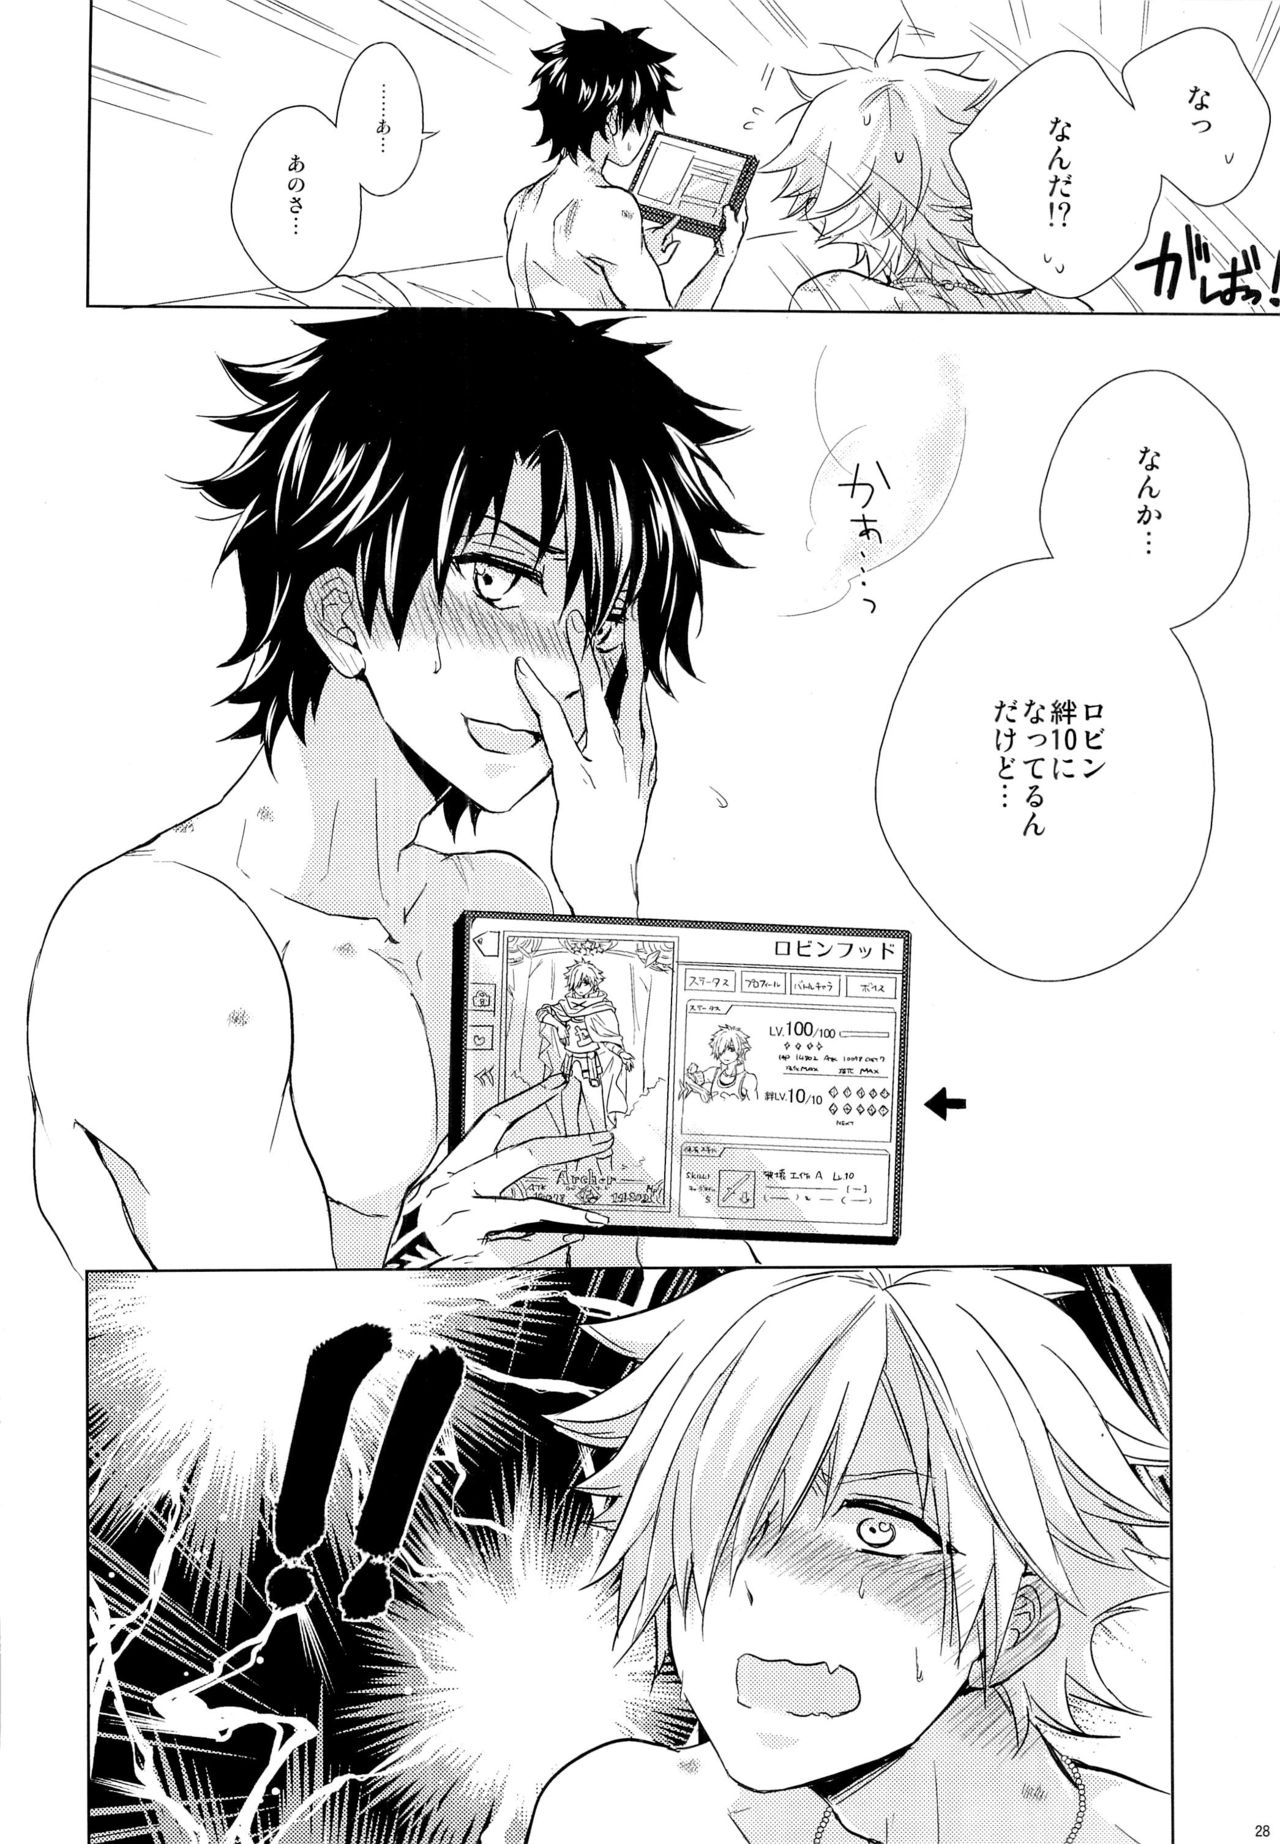 (Dai 7-ji ROOT4to5) [Uji (Meguro)] Kizuna 10 ni Naru Made Shinai (Fate/Grand Order) page 28 full